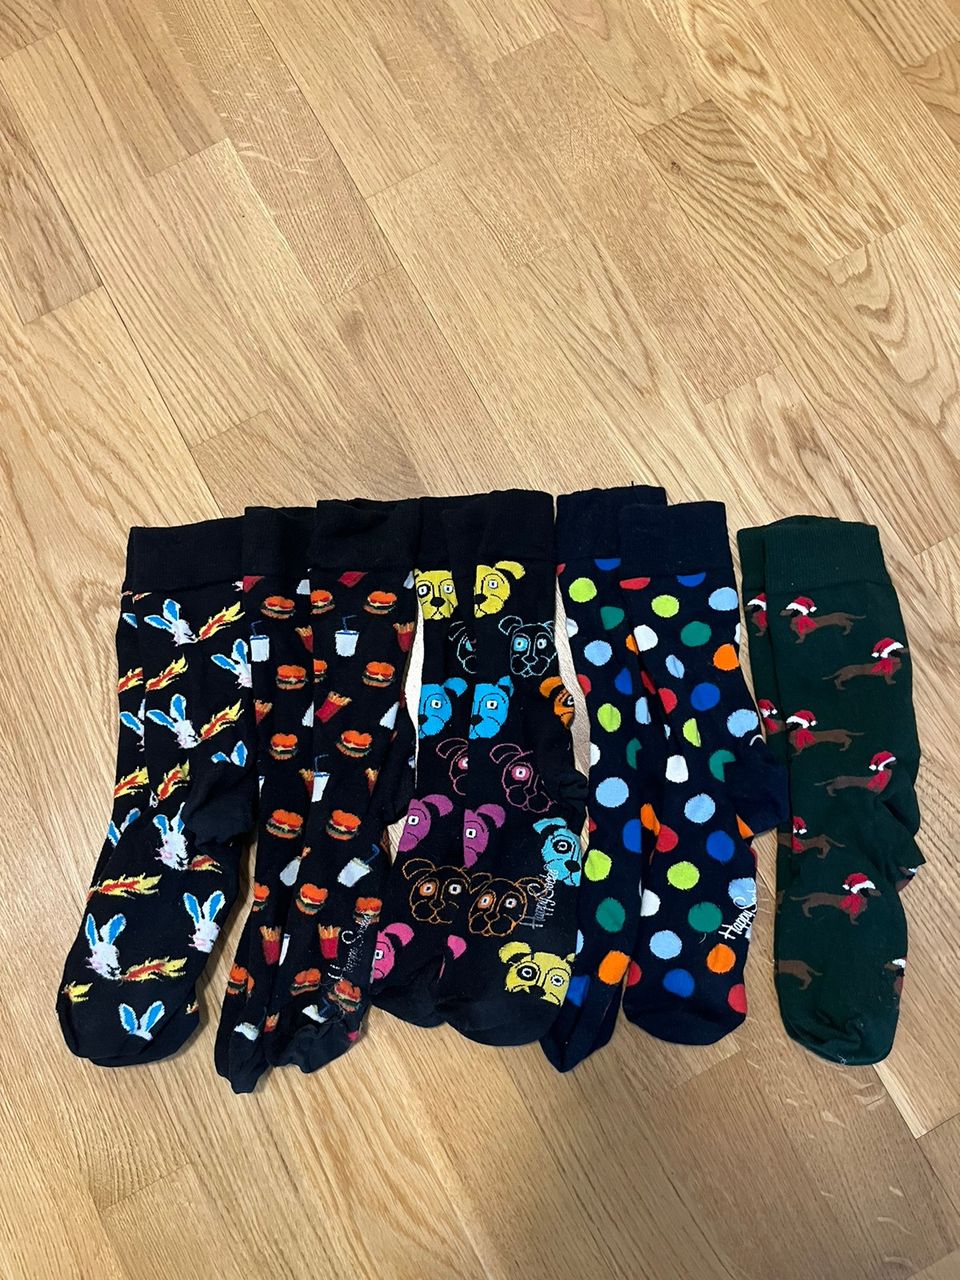 Happy Socks sukkapaketti (5kpl) koko 41-46.